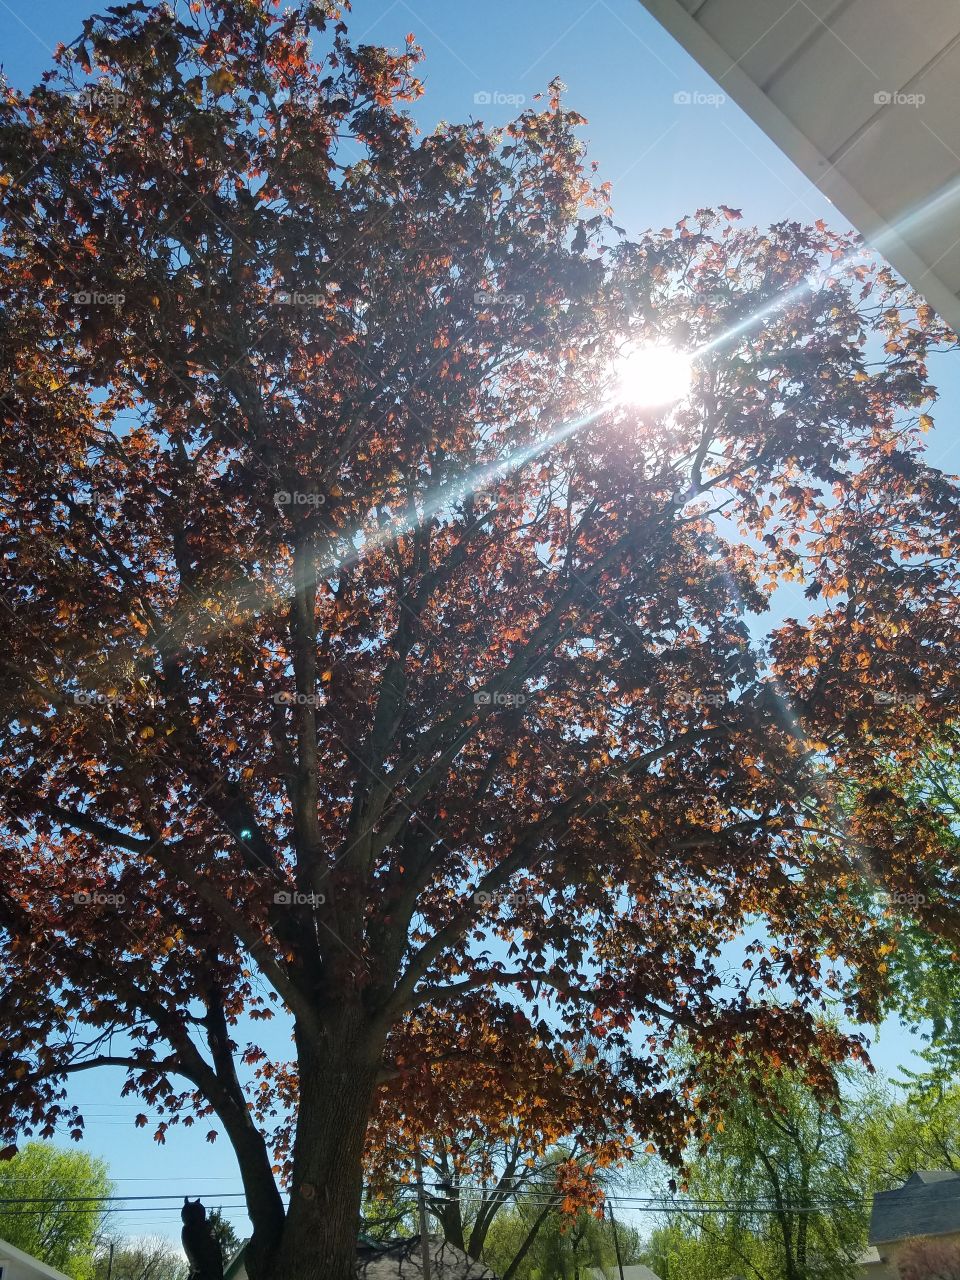 Shining thru the leaves